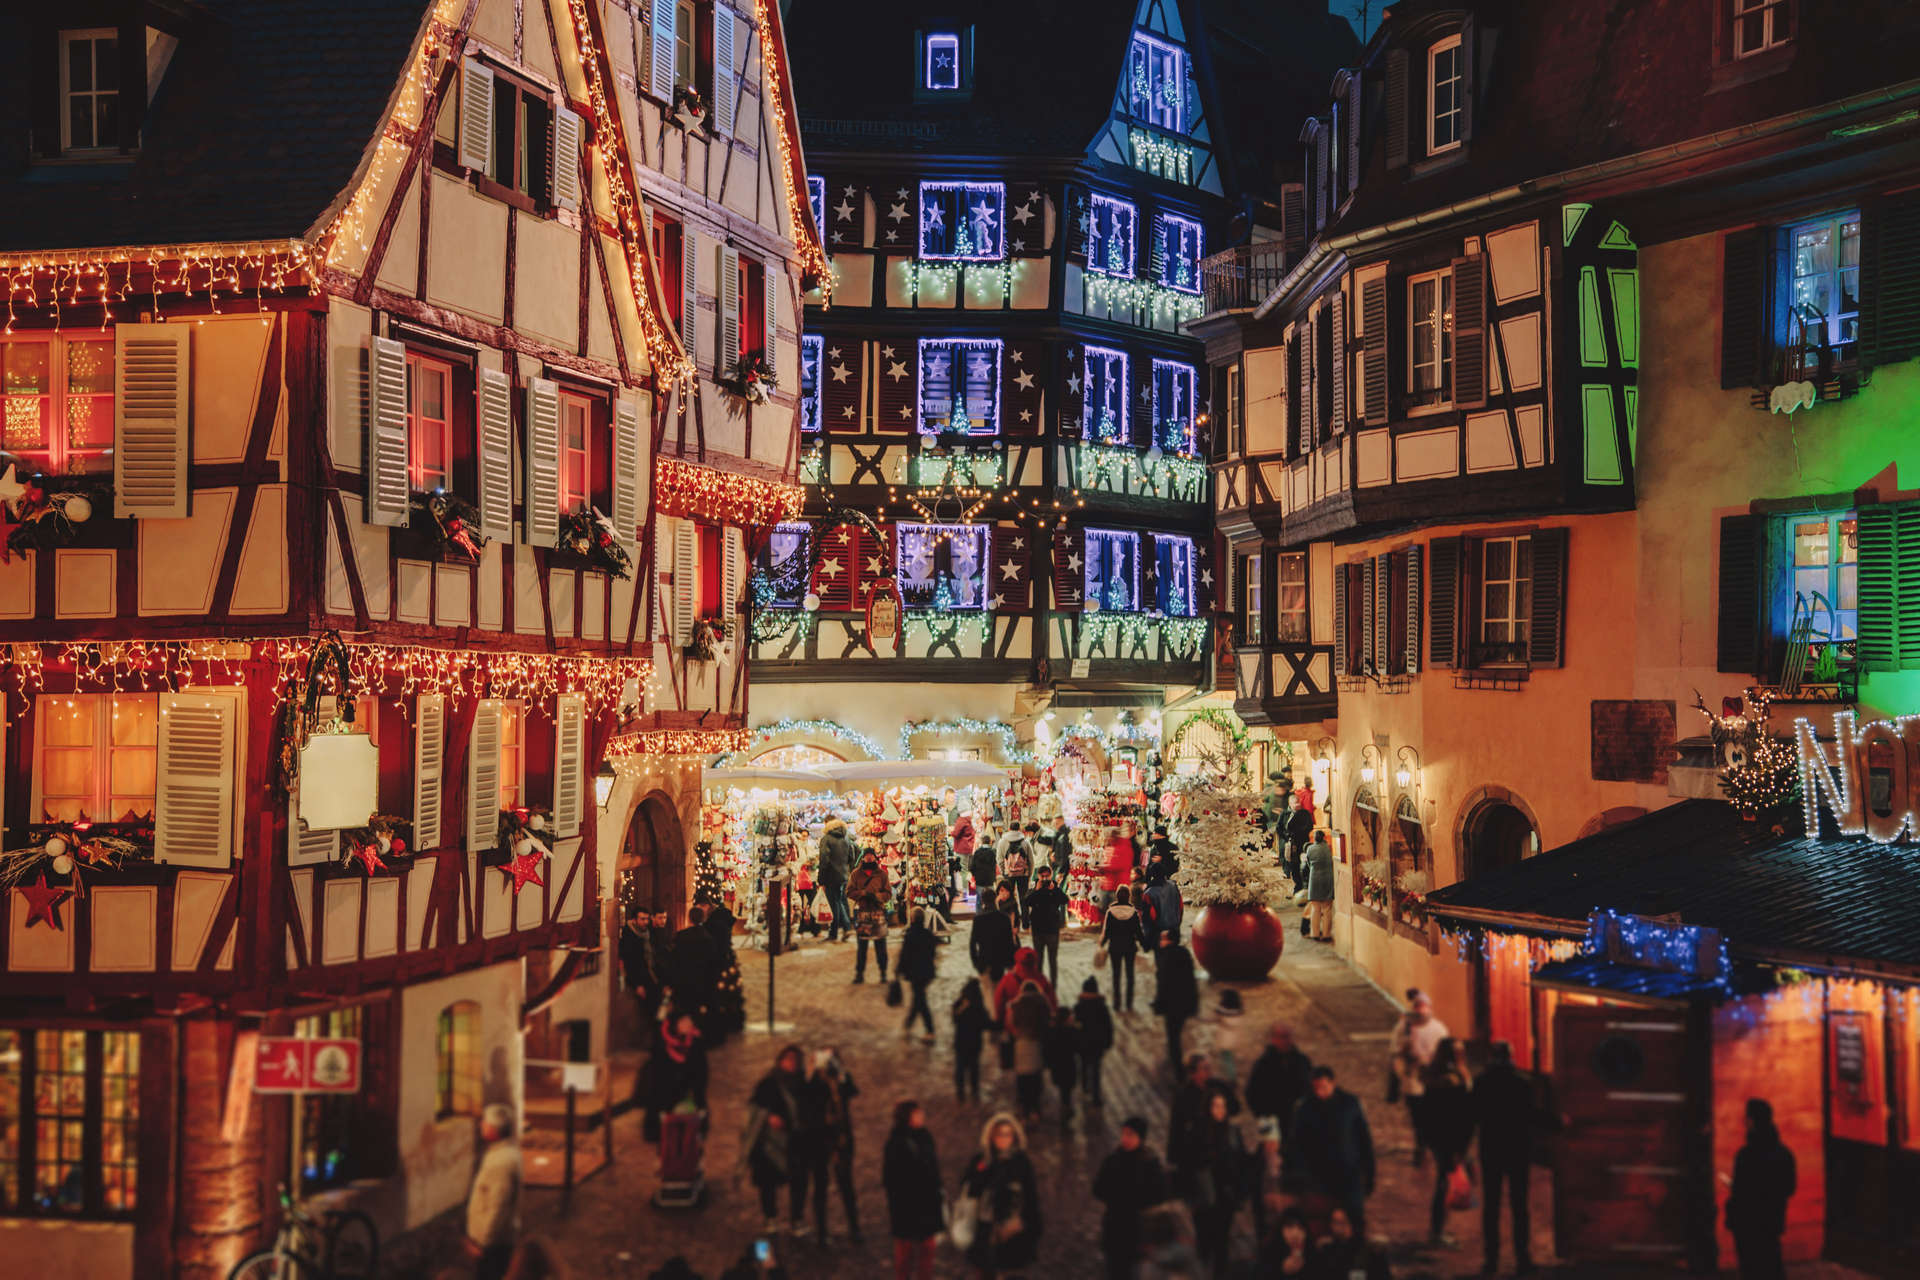 Christmas market in Strasbourg